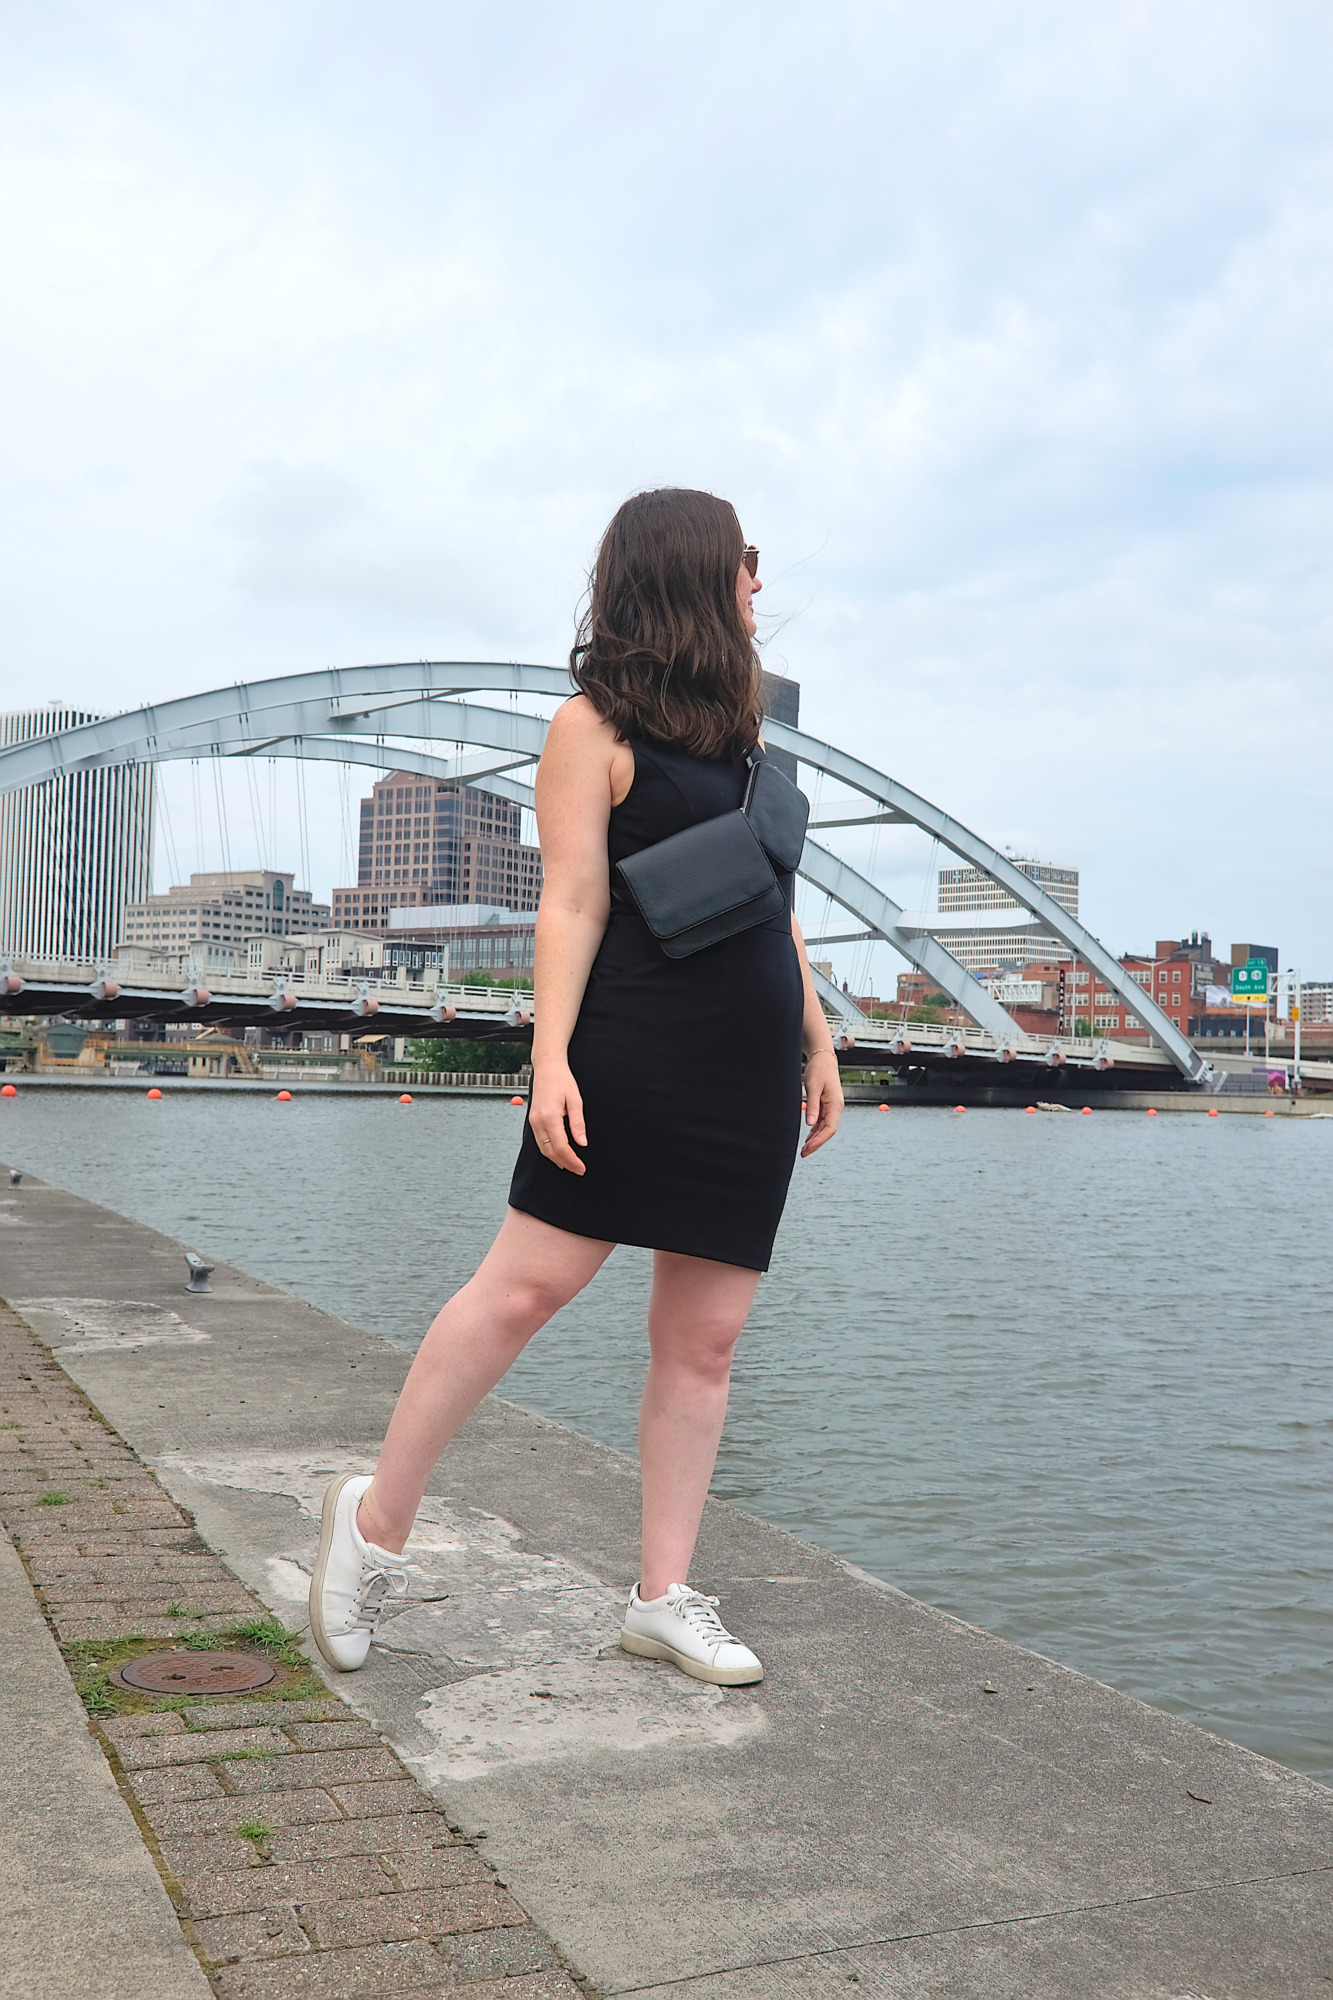 Alyssa stands in front of the bridge in Rochester